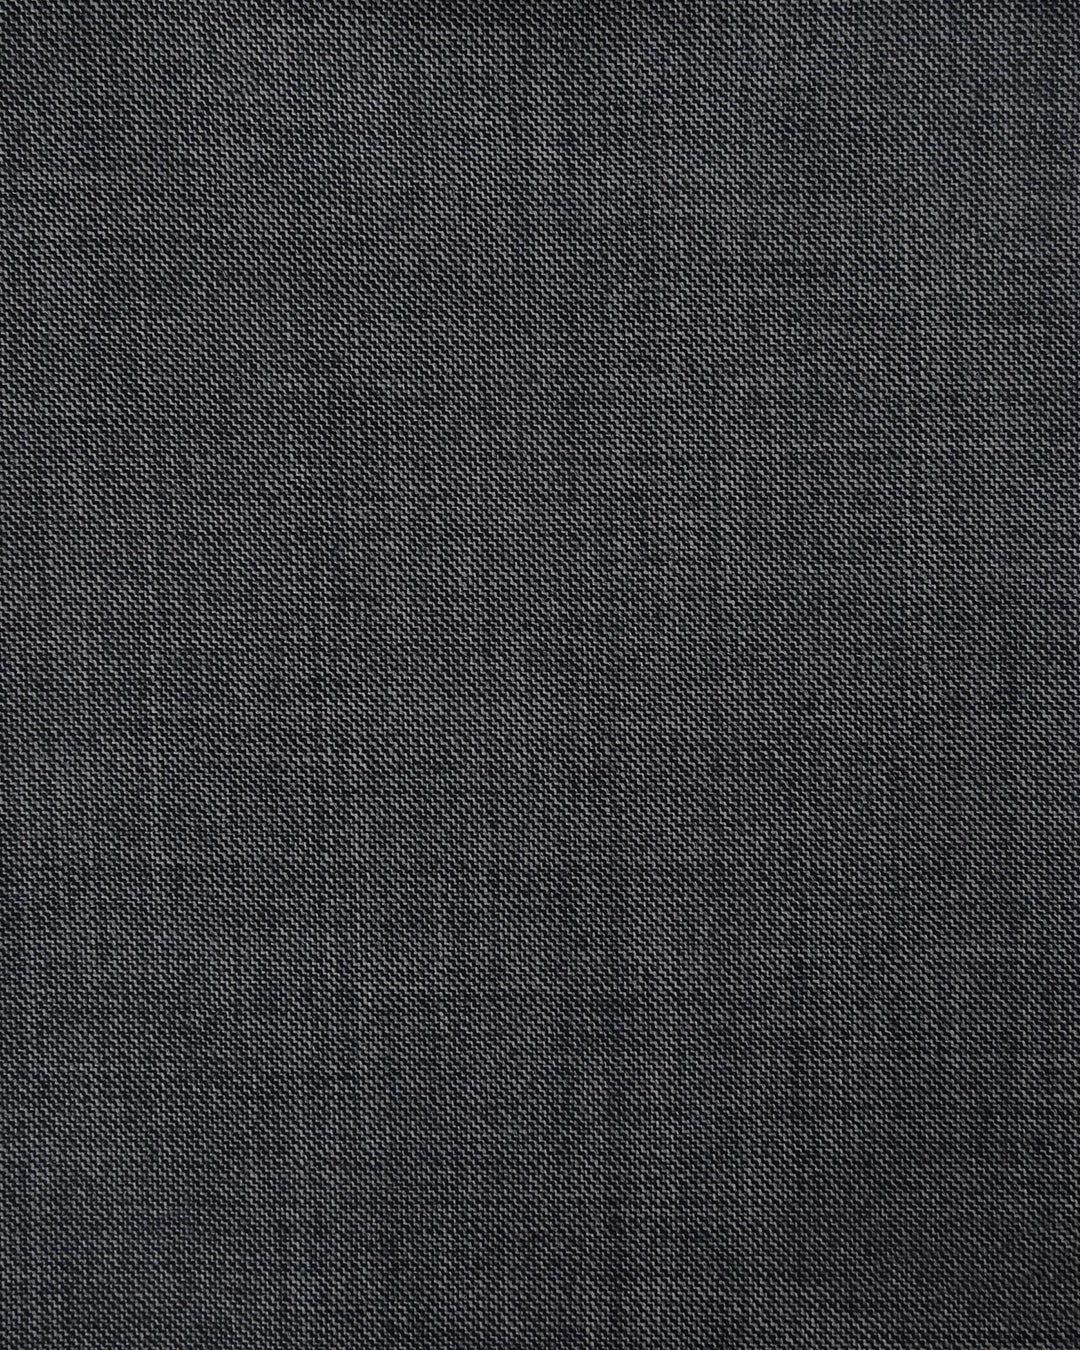 VBC Super 110's Wool: Sharkskin Grey